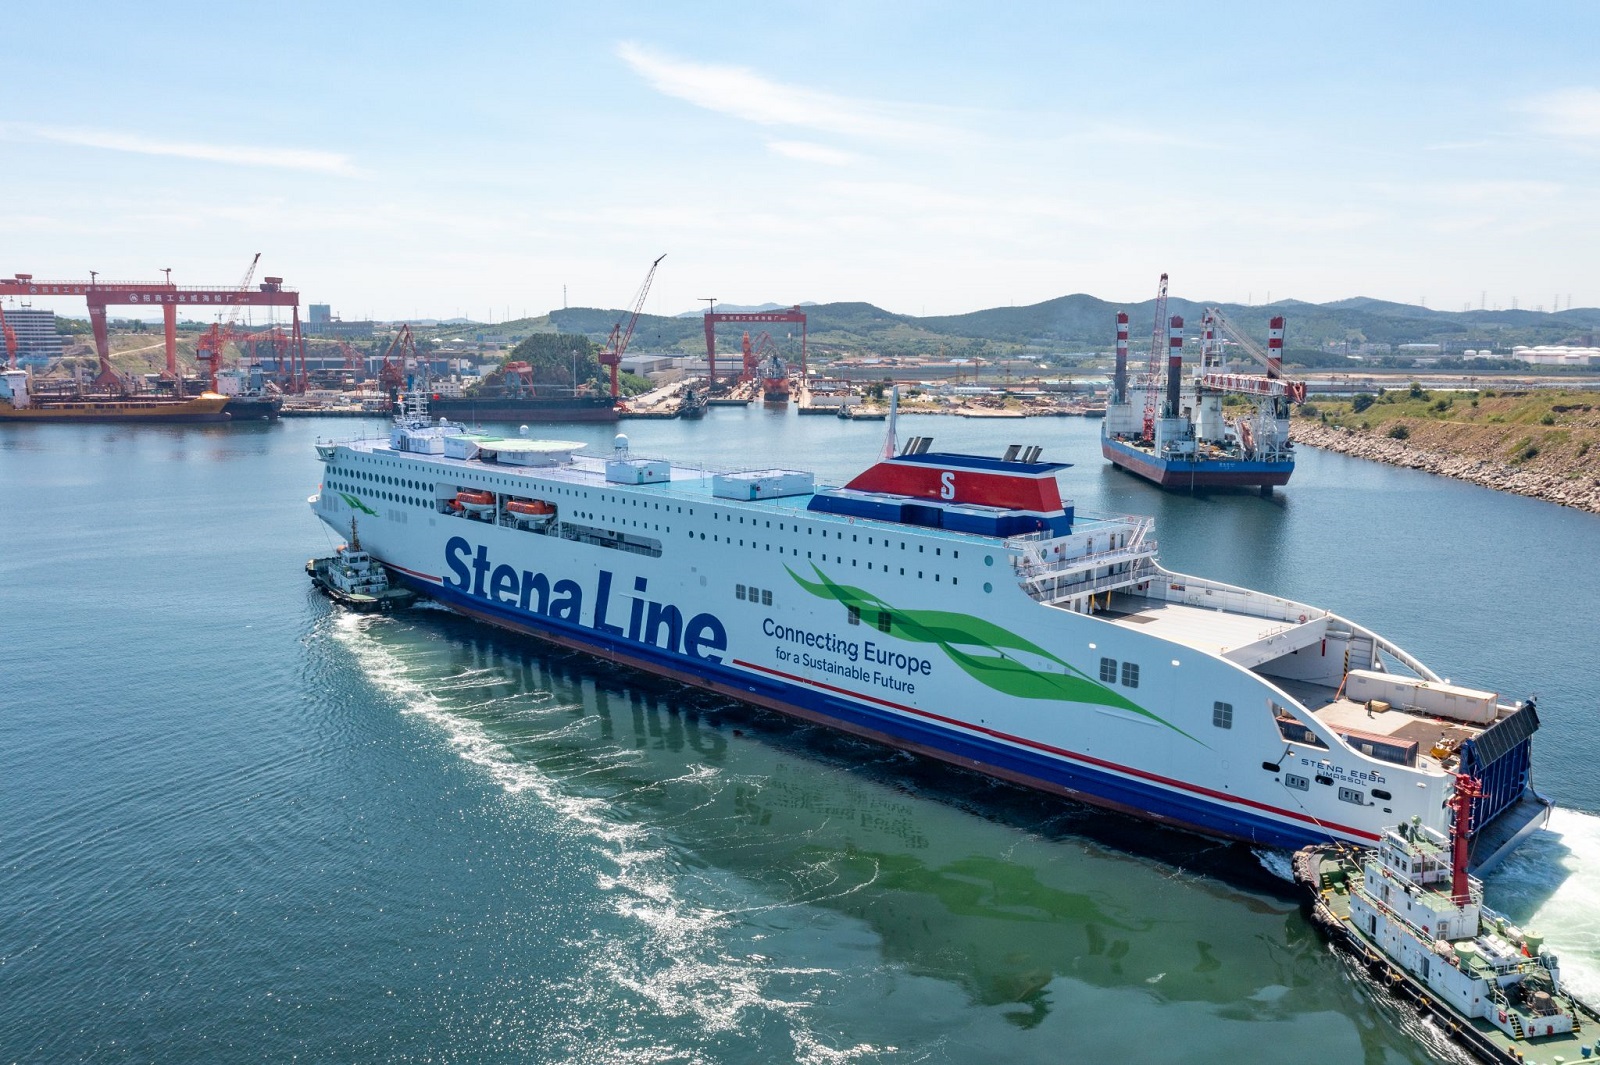 Stena Ebba, Stena Line’s 5th E-Flexer, heads for the Baltic Sea